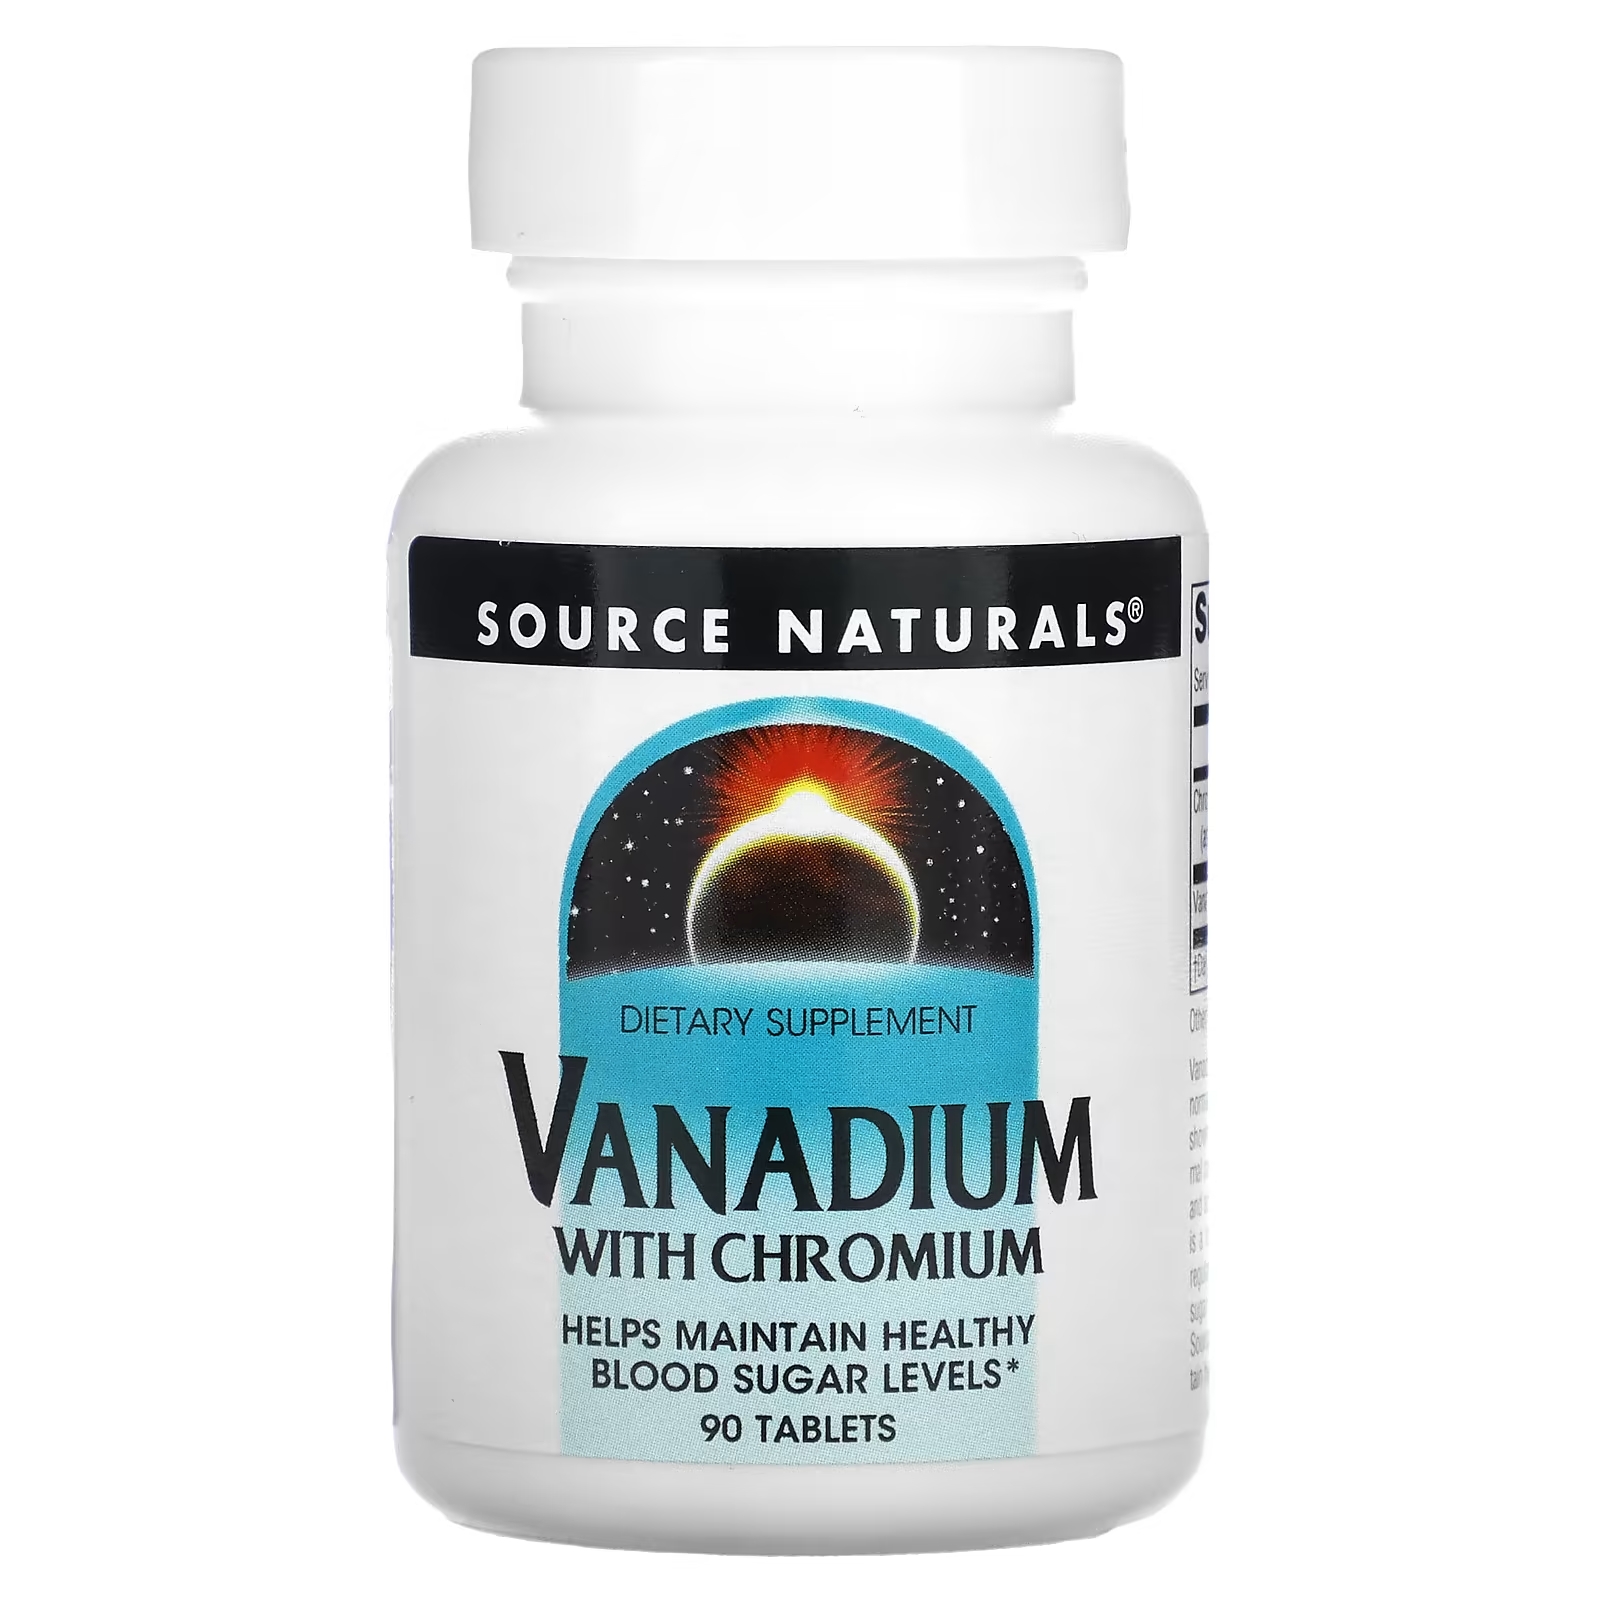 Source Naturals ванадий с хромом, 90 таблеток source naturals ванадий с хромом 90 таблеток